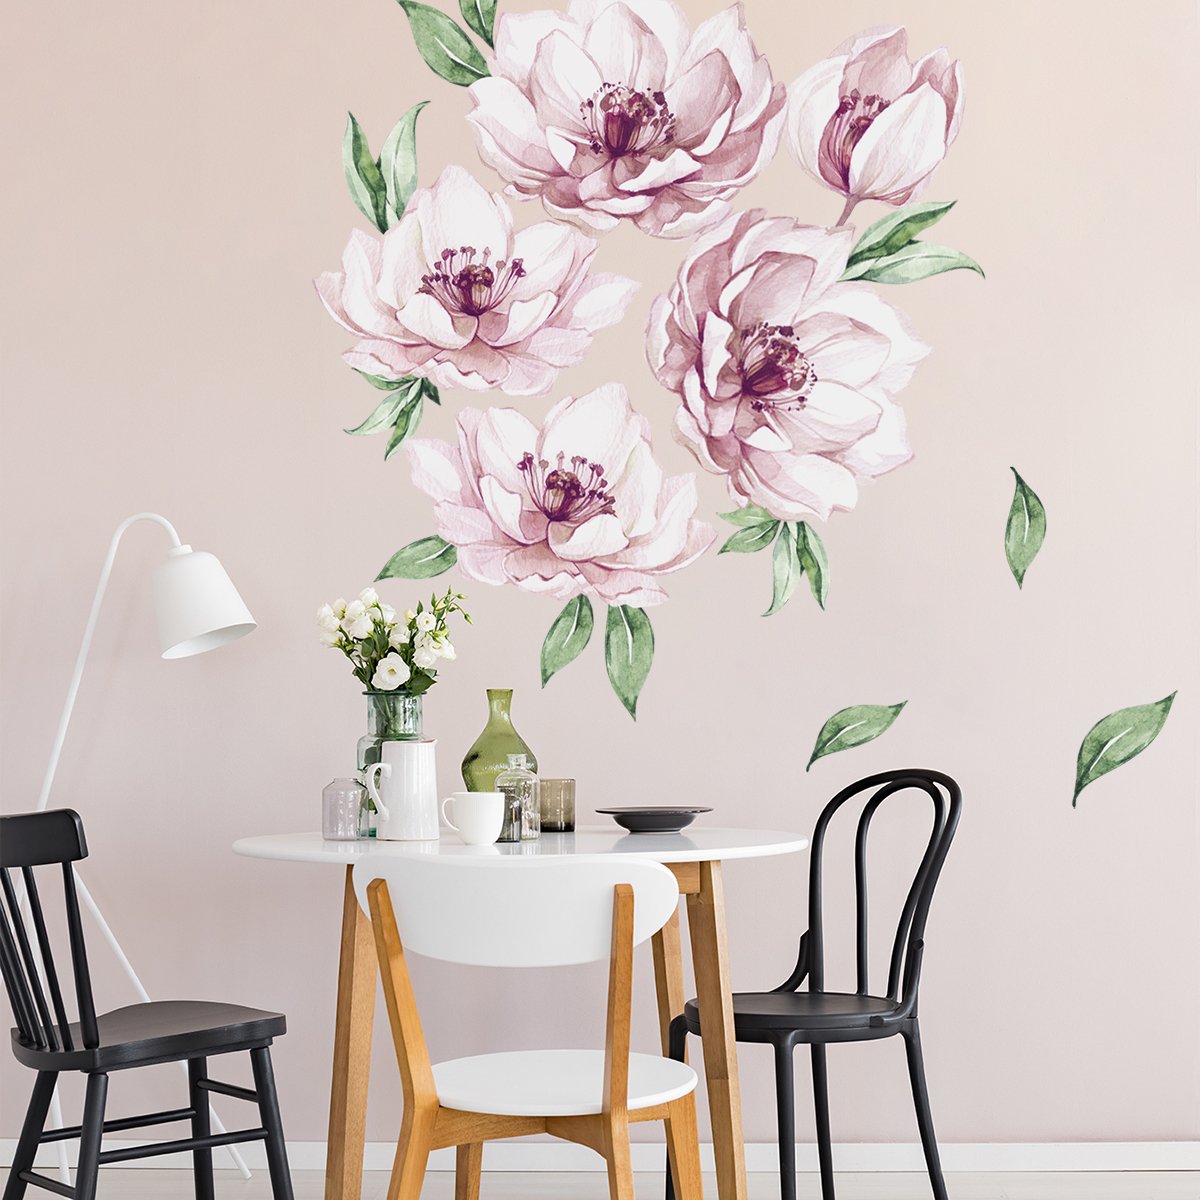 Naklejka do salonu na ścianę kwiaty#kolor_rozowy